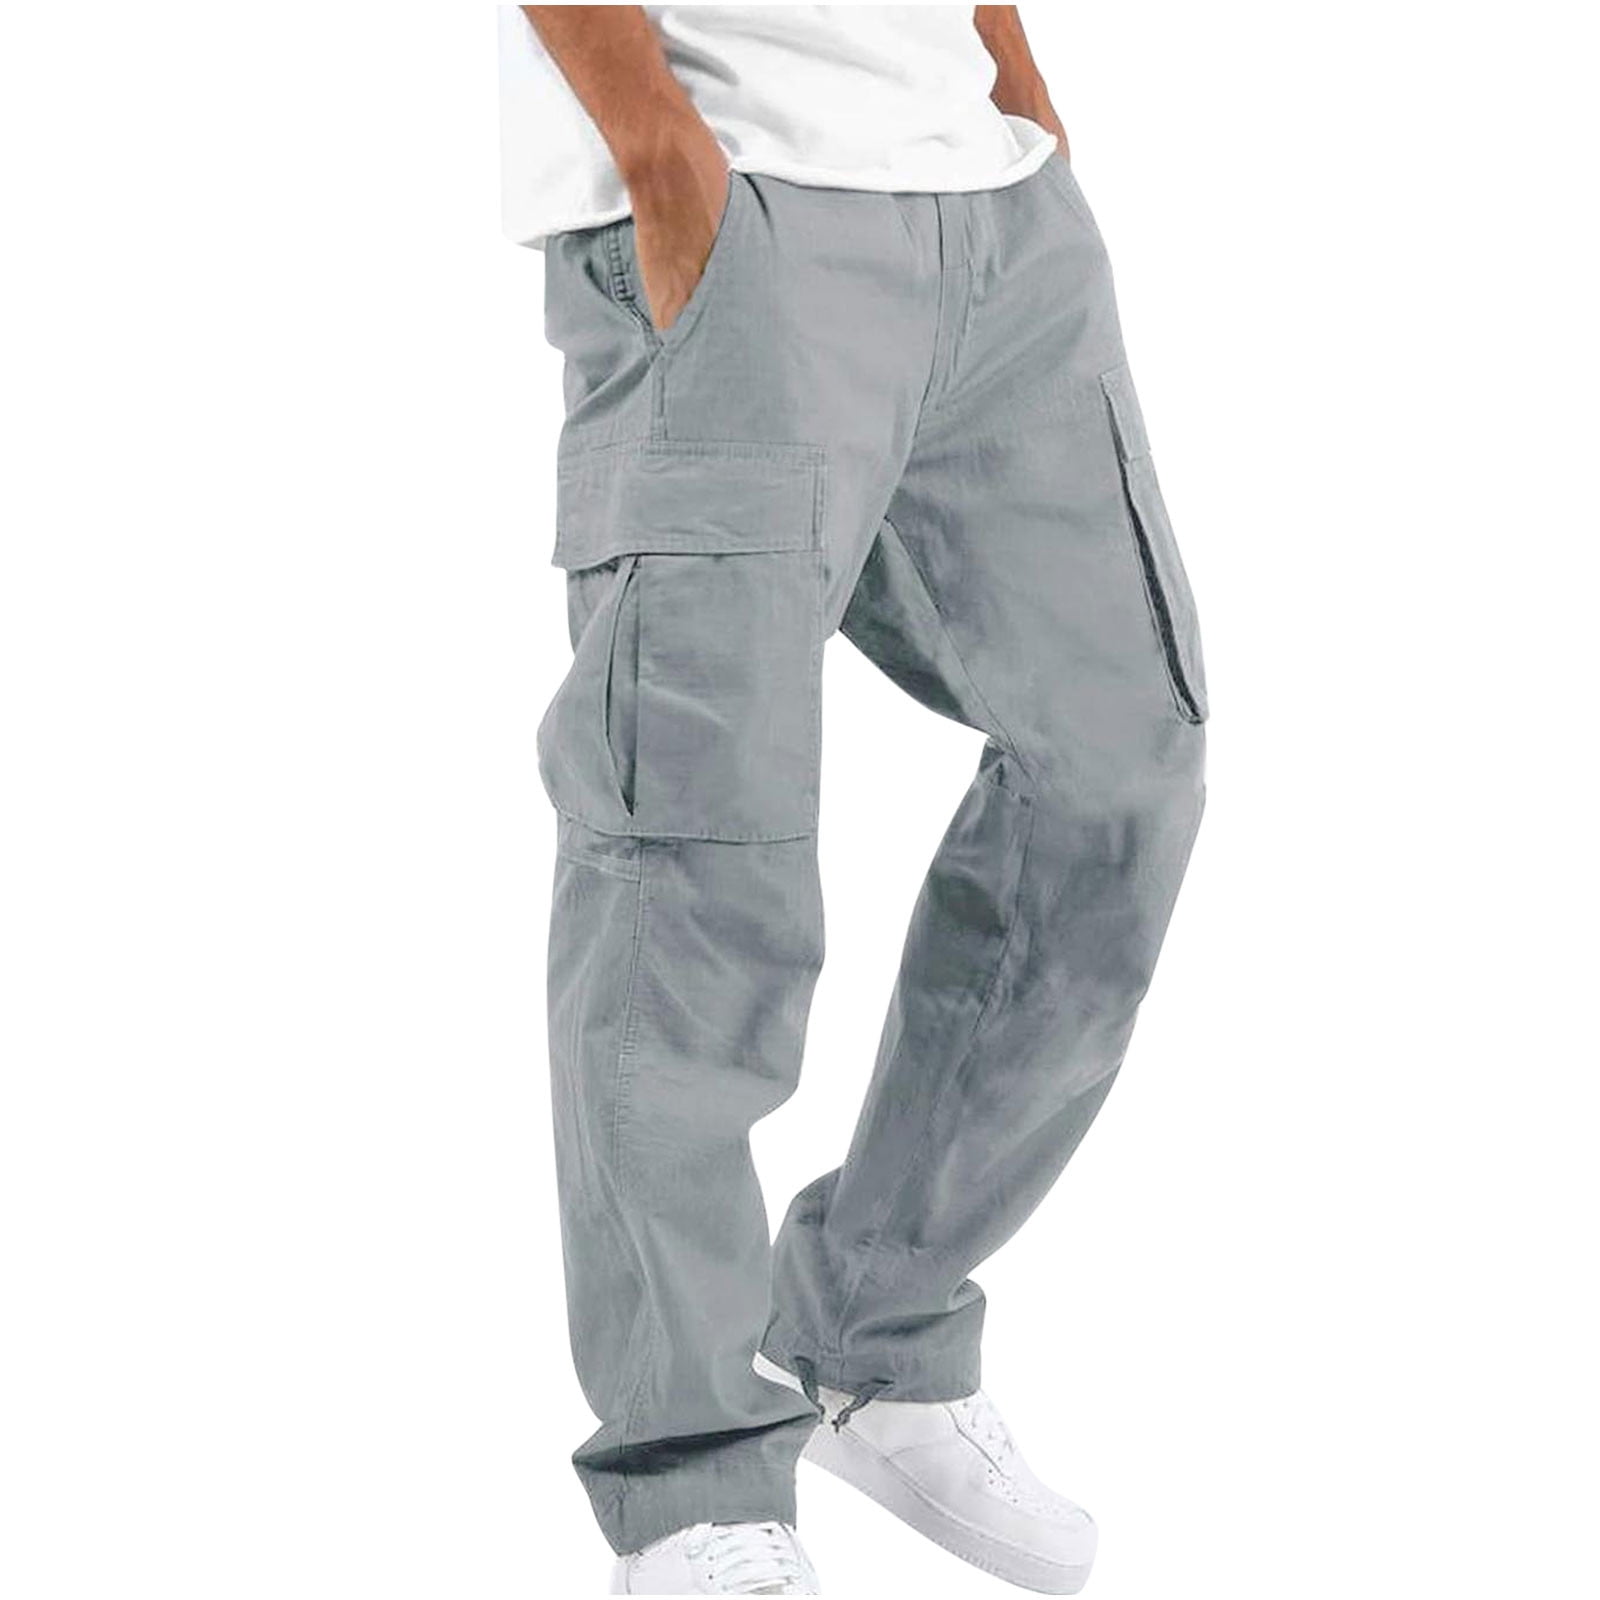 TRUEWERK Pants | Men's Workwear Pants | Shop TRUEWERK